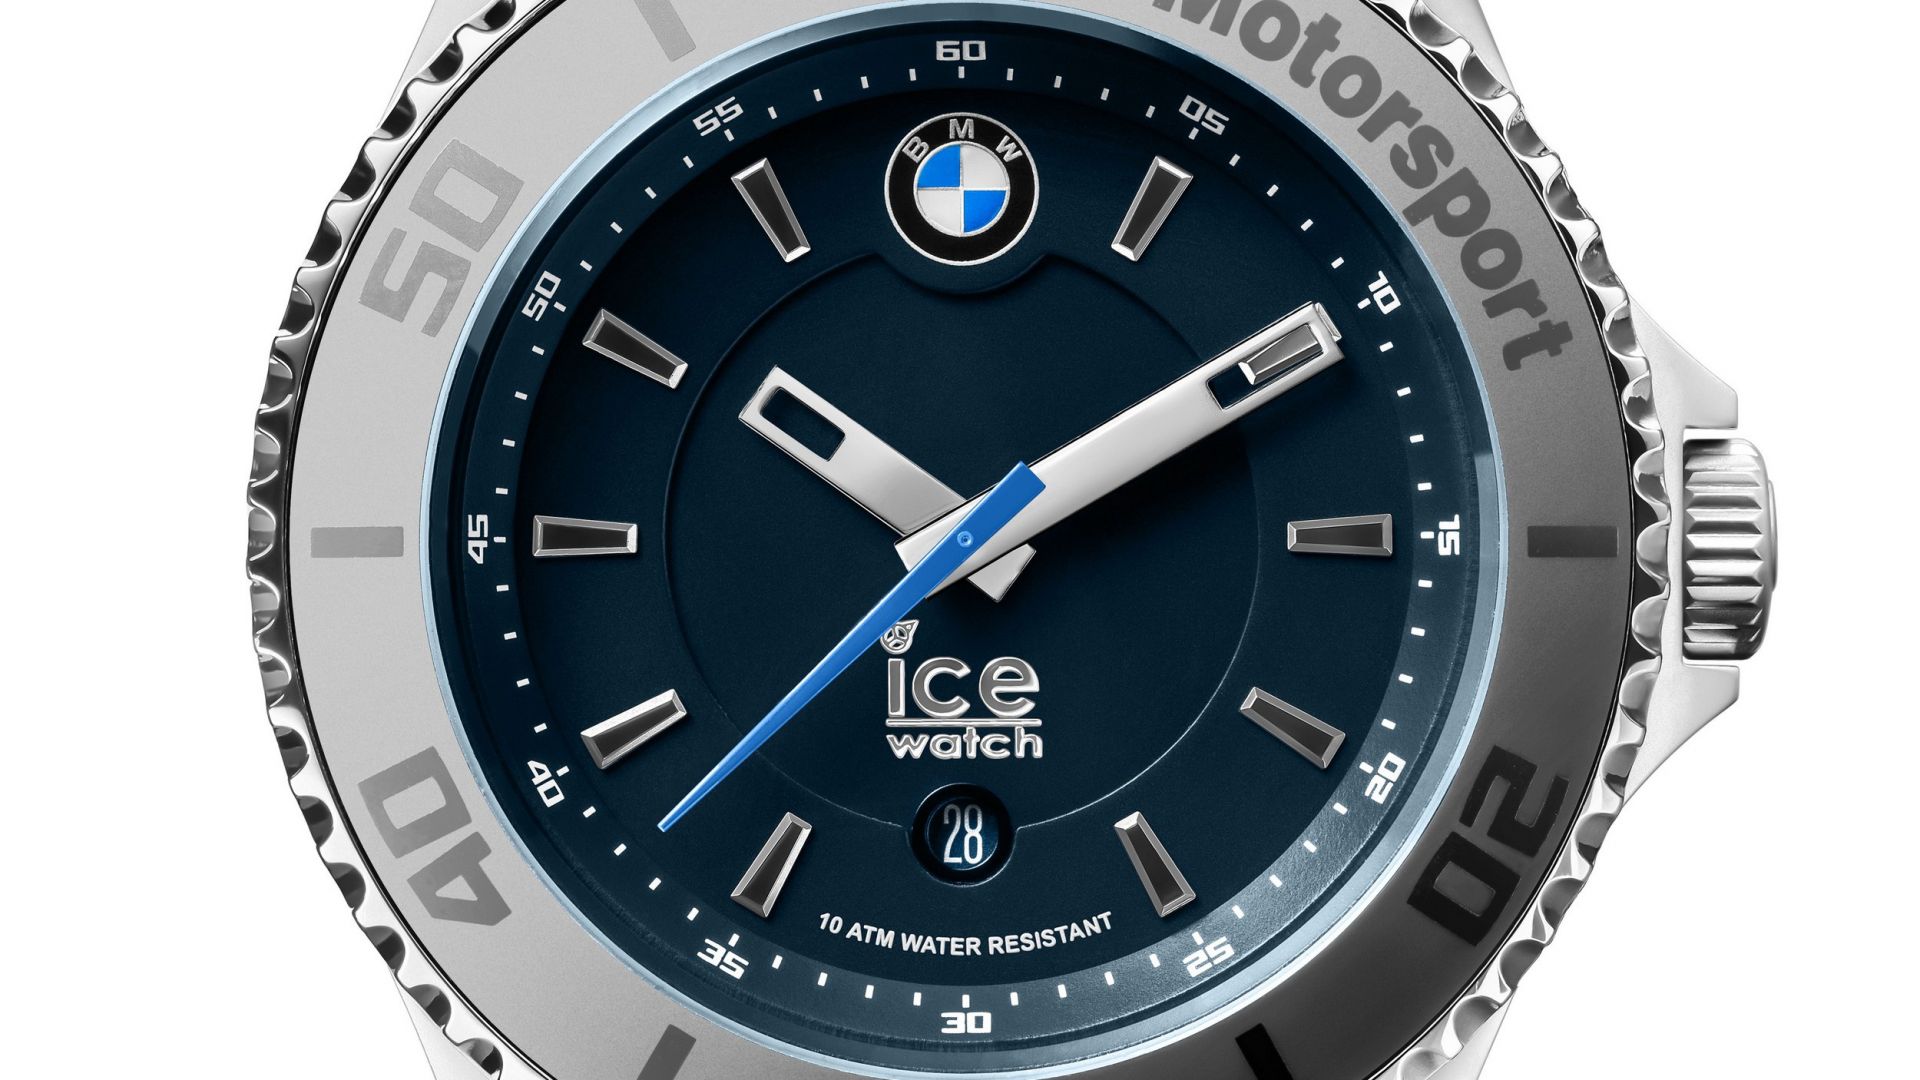 Lifestyle - Ice Watch BMW Motorsport - MotorBox